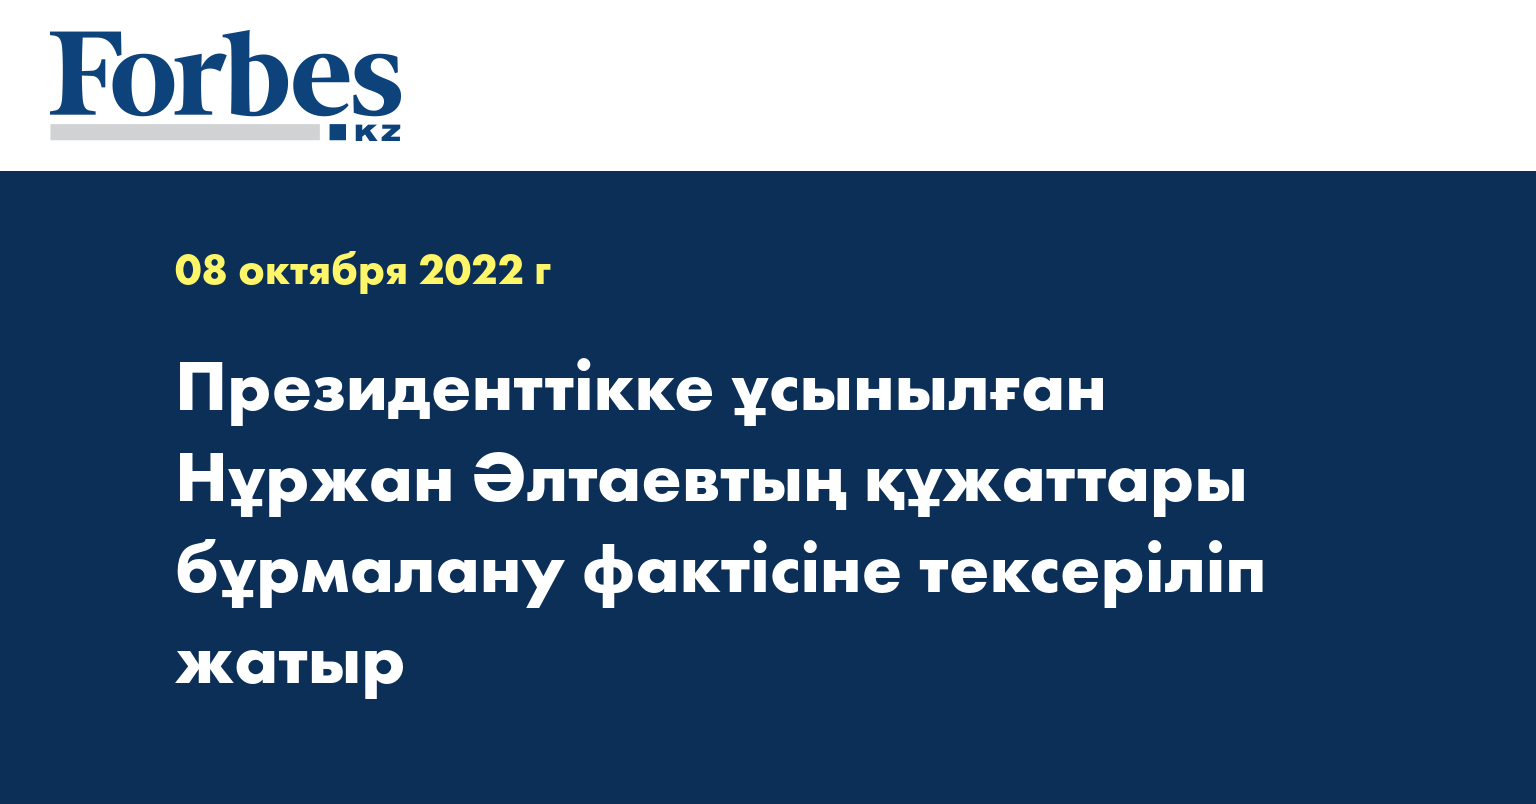 Президенттікке ұсынылған Нұржан Әлтаевтың құжаттары бұрмалану фактісіне тексеріліп жатыр